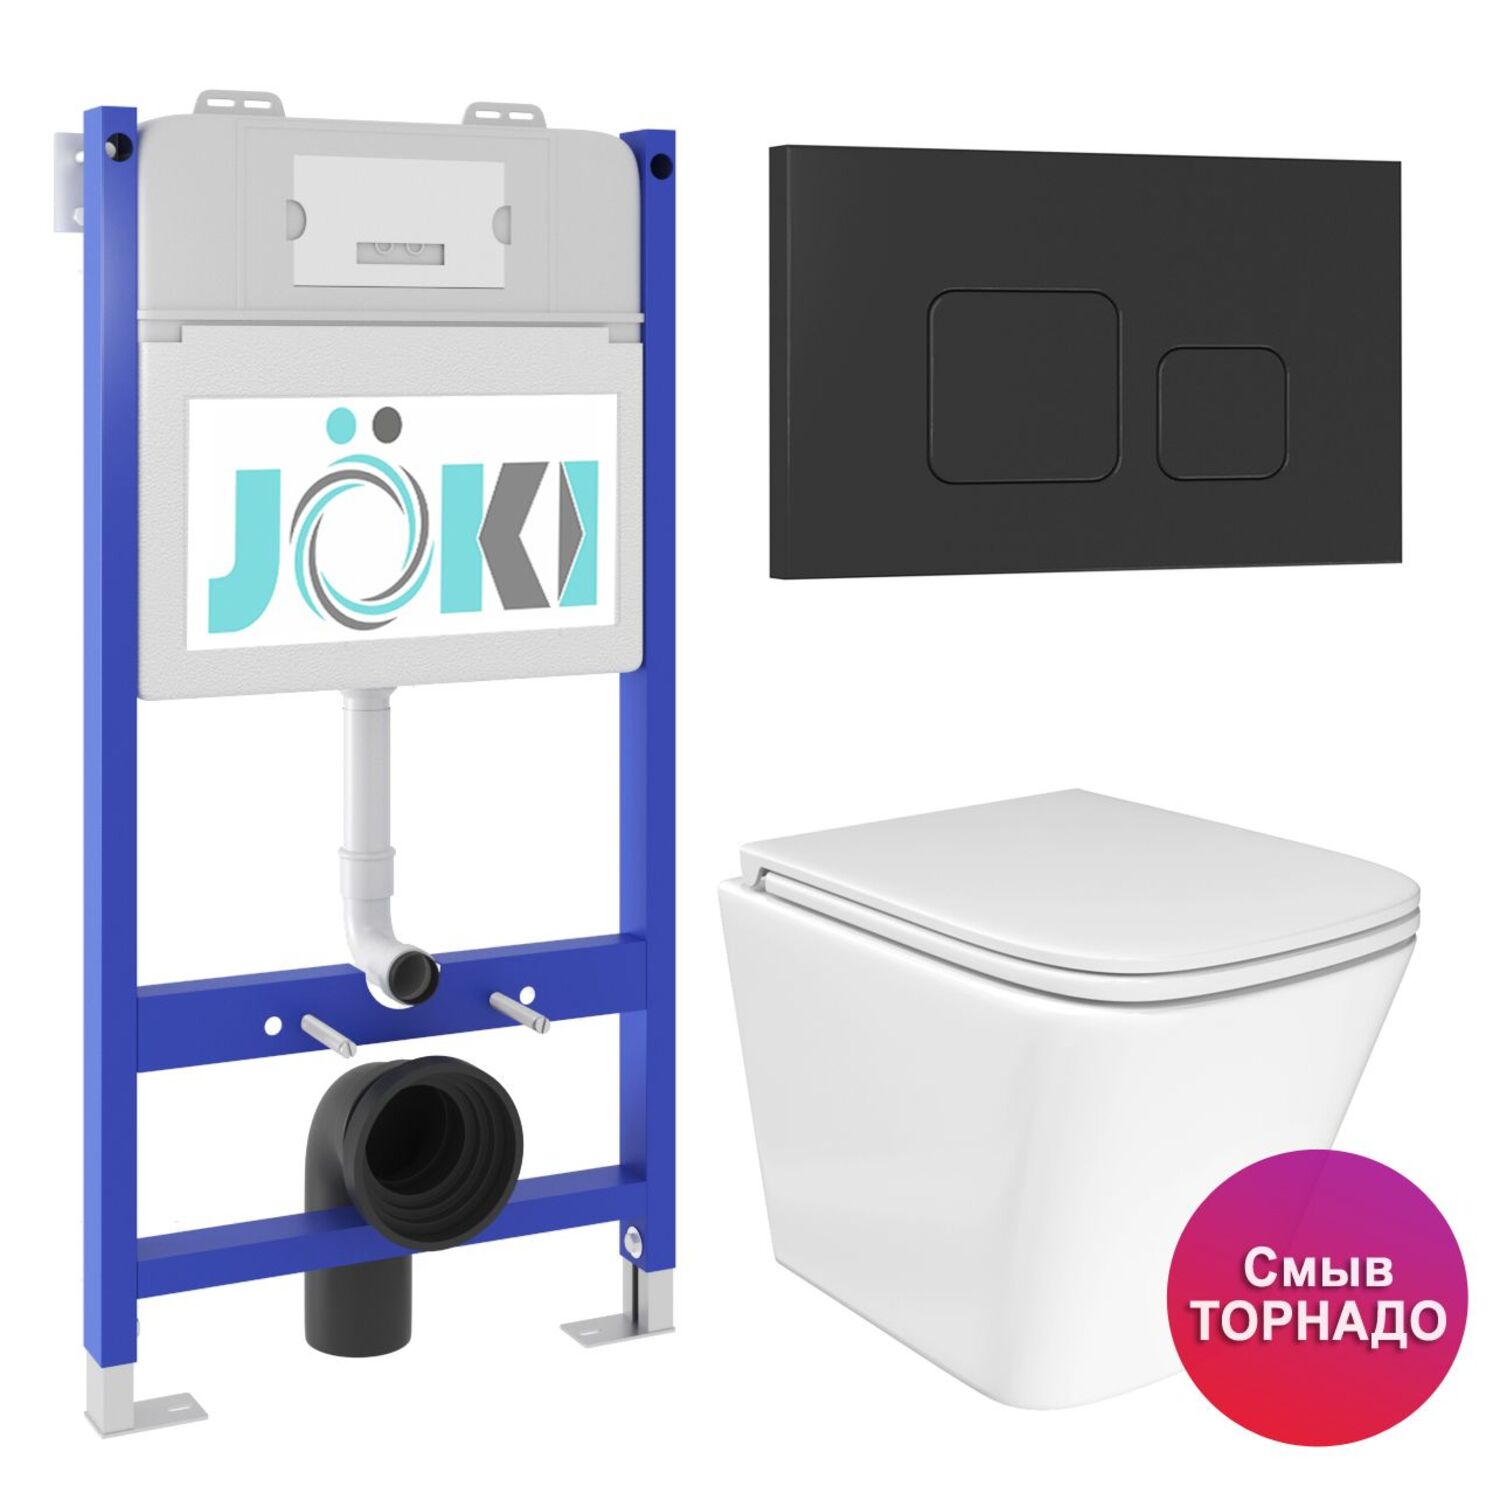 Комплект: JOKI Инсталляция JK03351+Кнопка JK702534BM черный+Verna T JK3031025 унитаз белый, смыв Торнадо